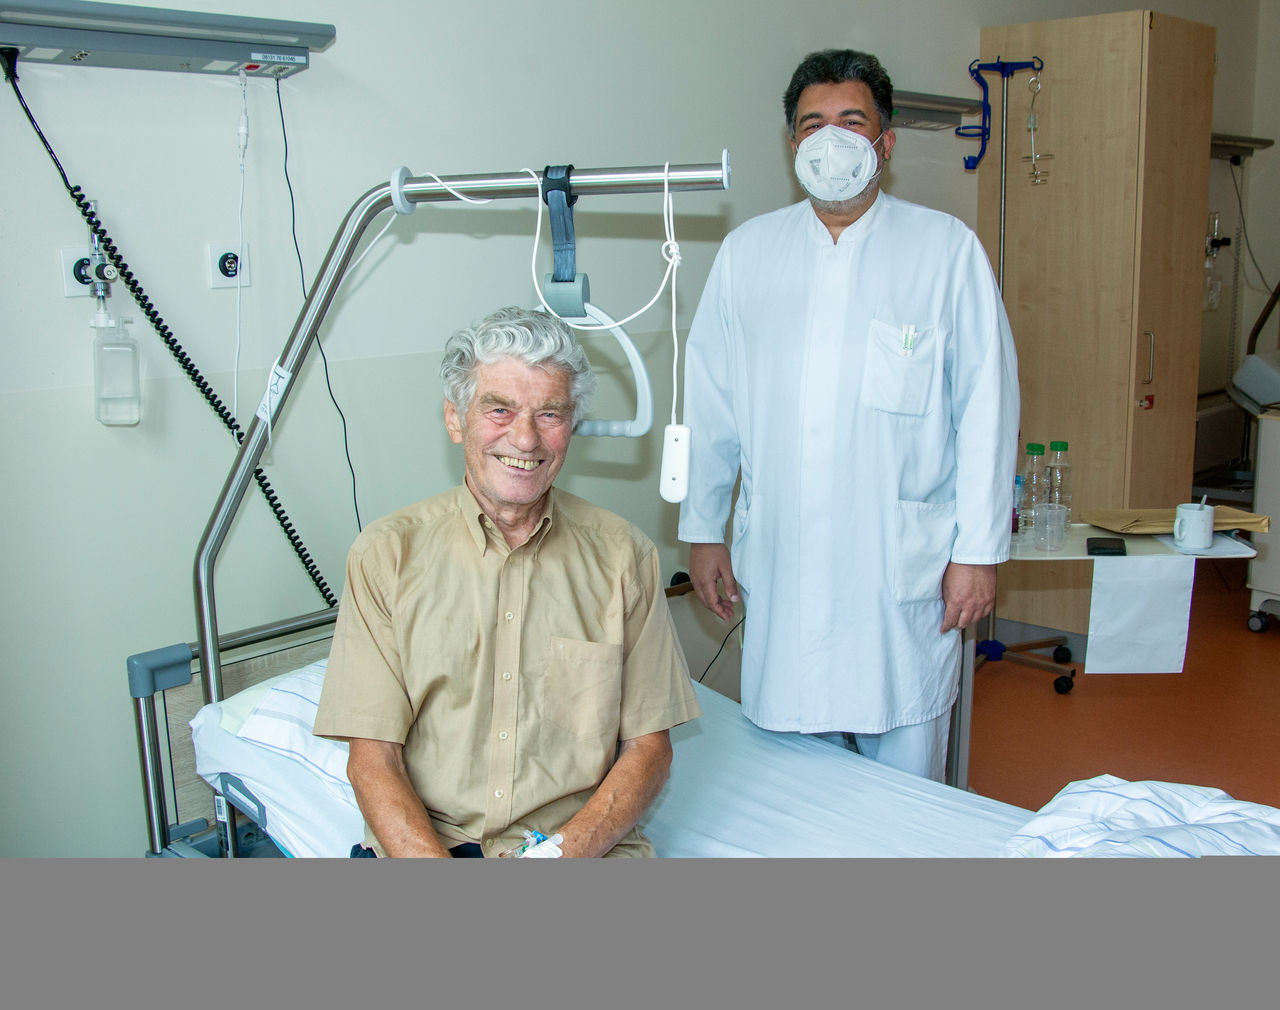 25. Prostata-OP mit Laser durchgeführt: Neue Fachabteilung Urologie setzt auf modernste Technik 